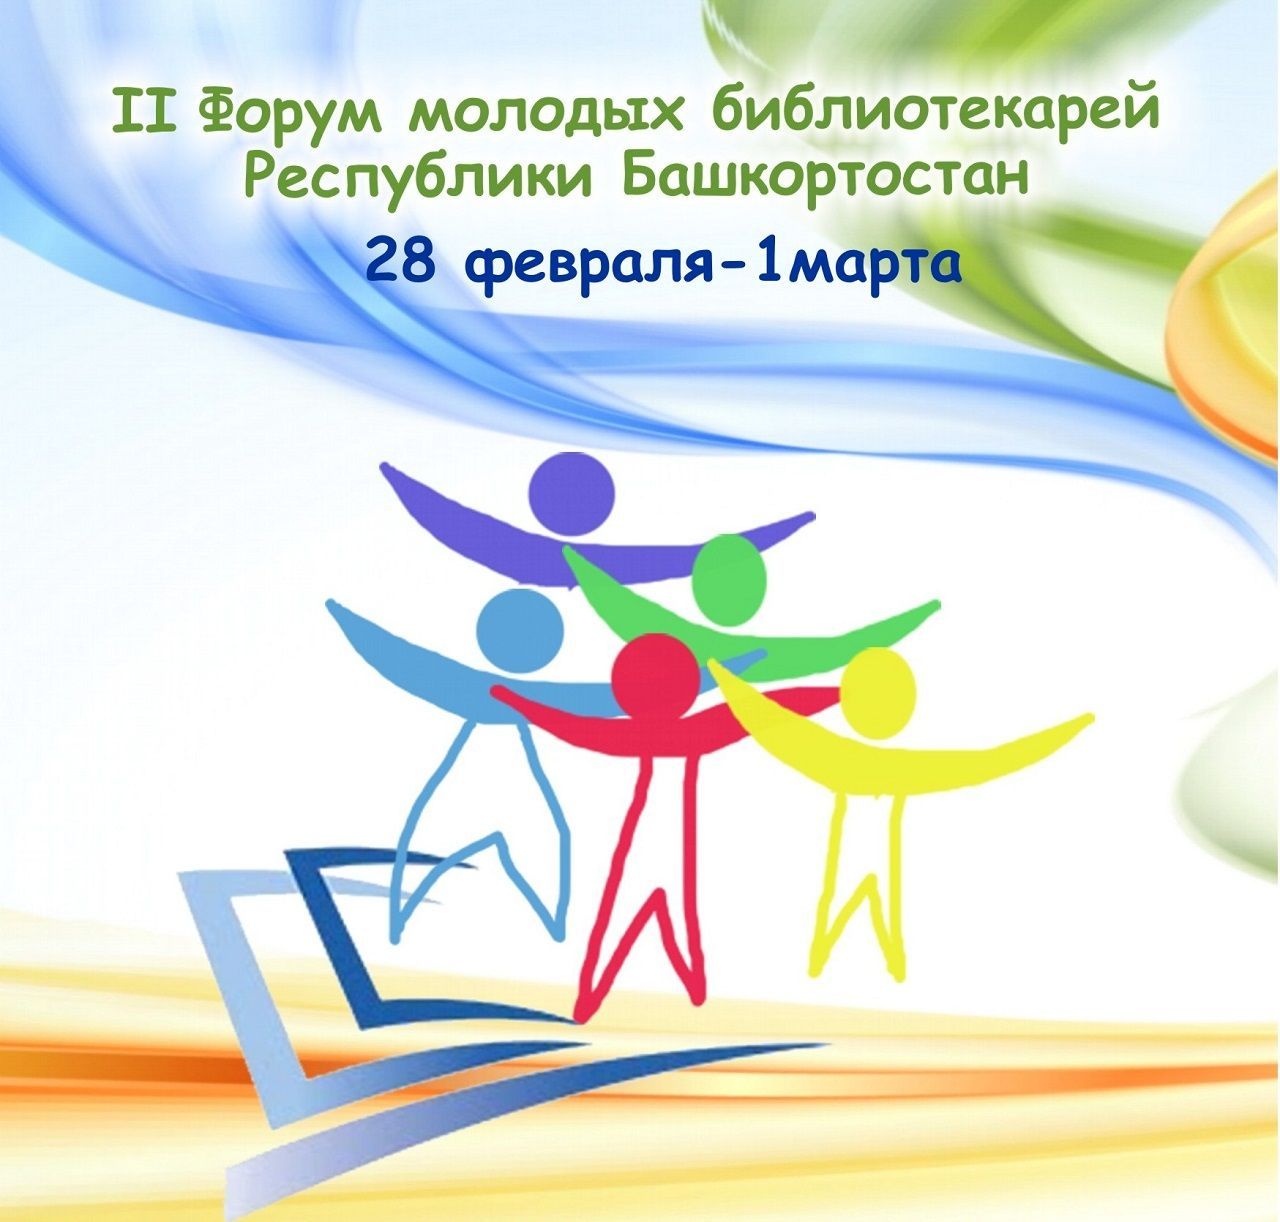 Центральная городская библиотека приглашает принять участие в форуме молодых библиотекарей Республики Башкортостан